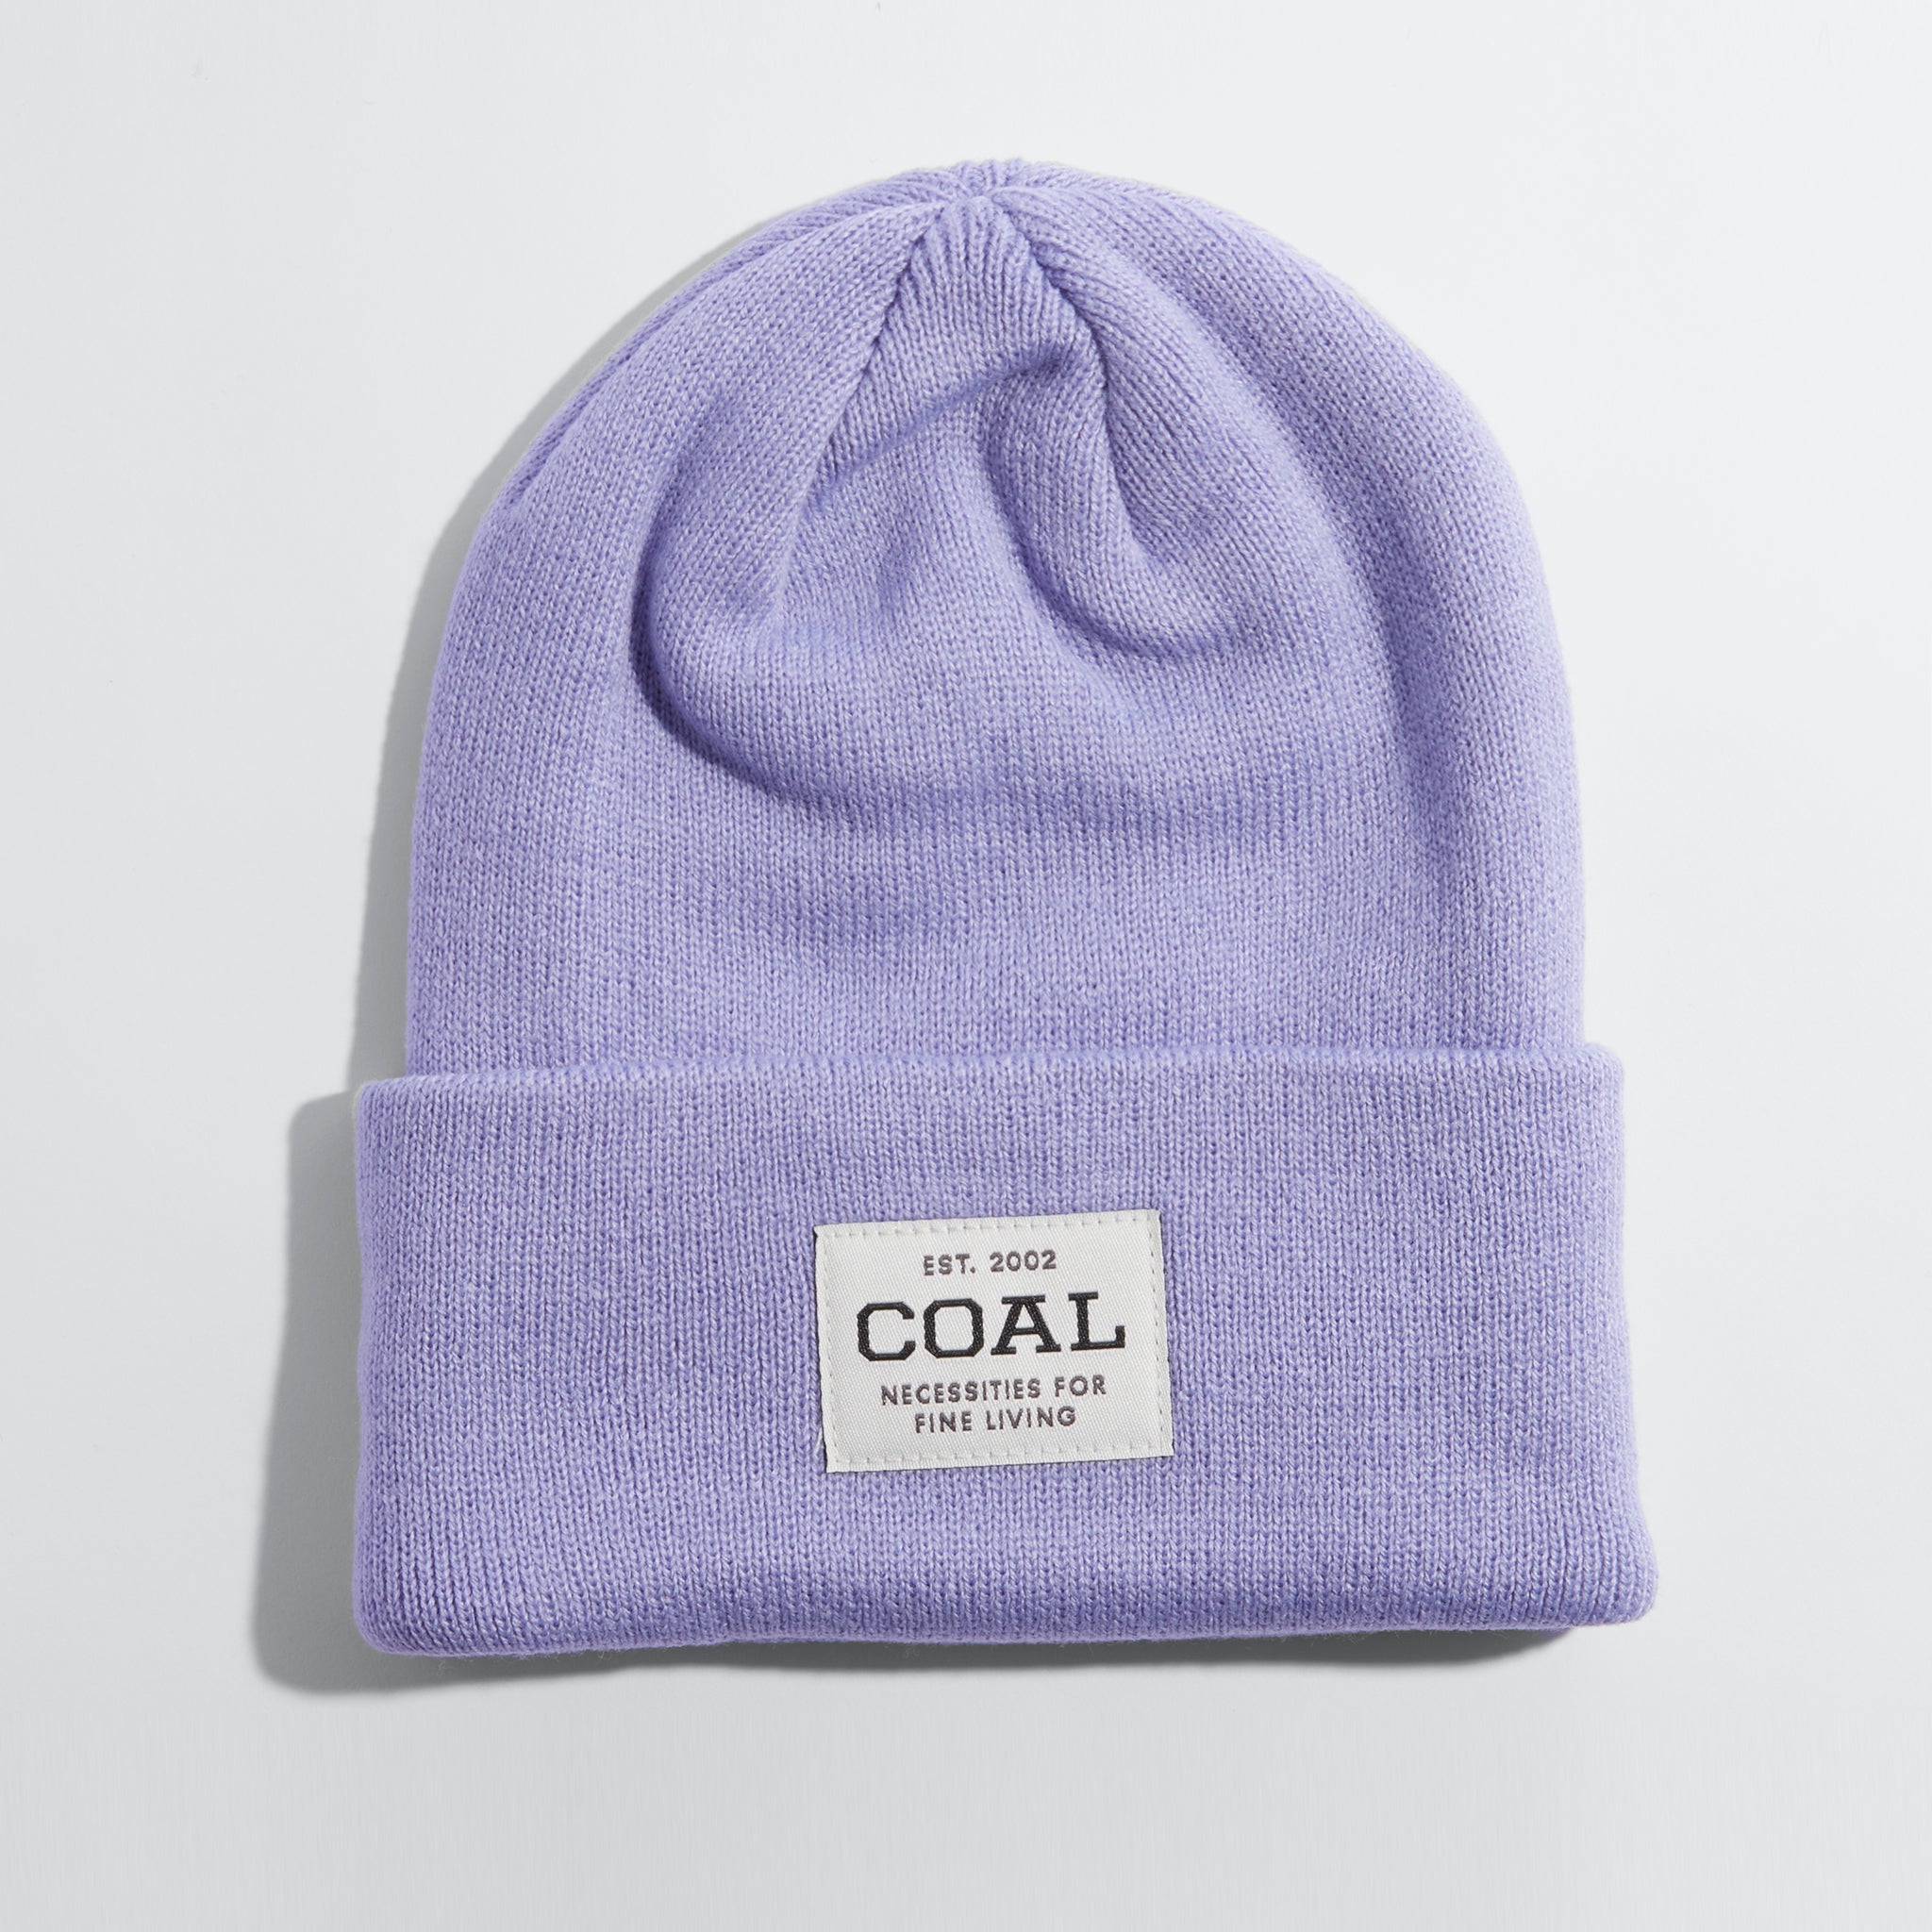 The Uniform Acrylic Knit Cuff | Coal Headwear Beanie